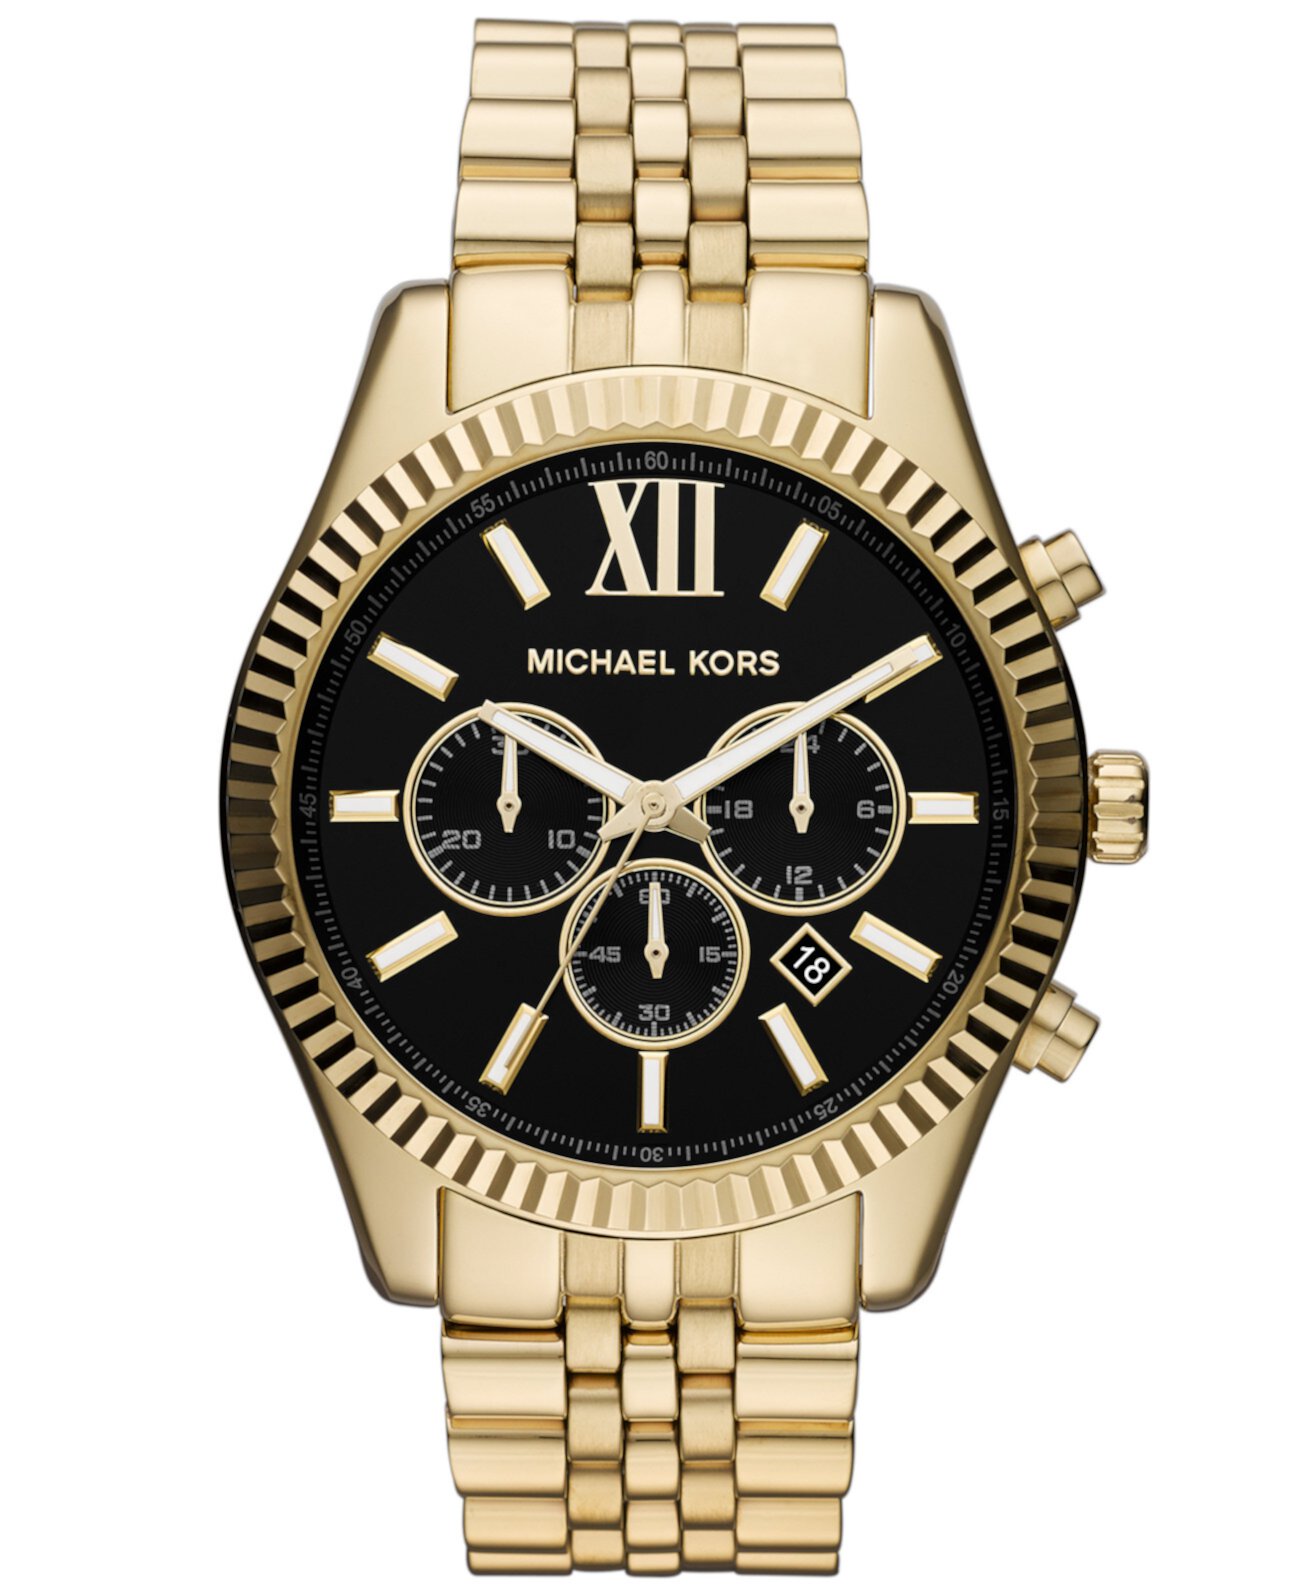 Мужские часы с хронографом Lexington Gold-Tone из нержавеющей стали с браслетом 45 мм MK8286 Michael Kors